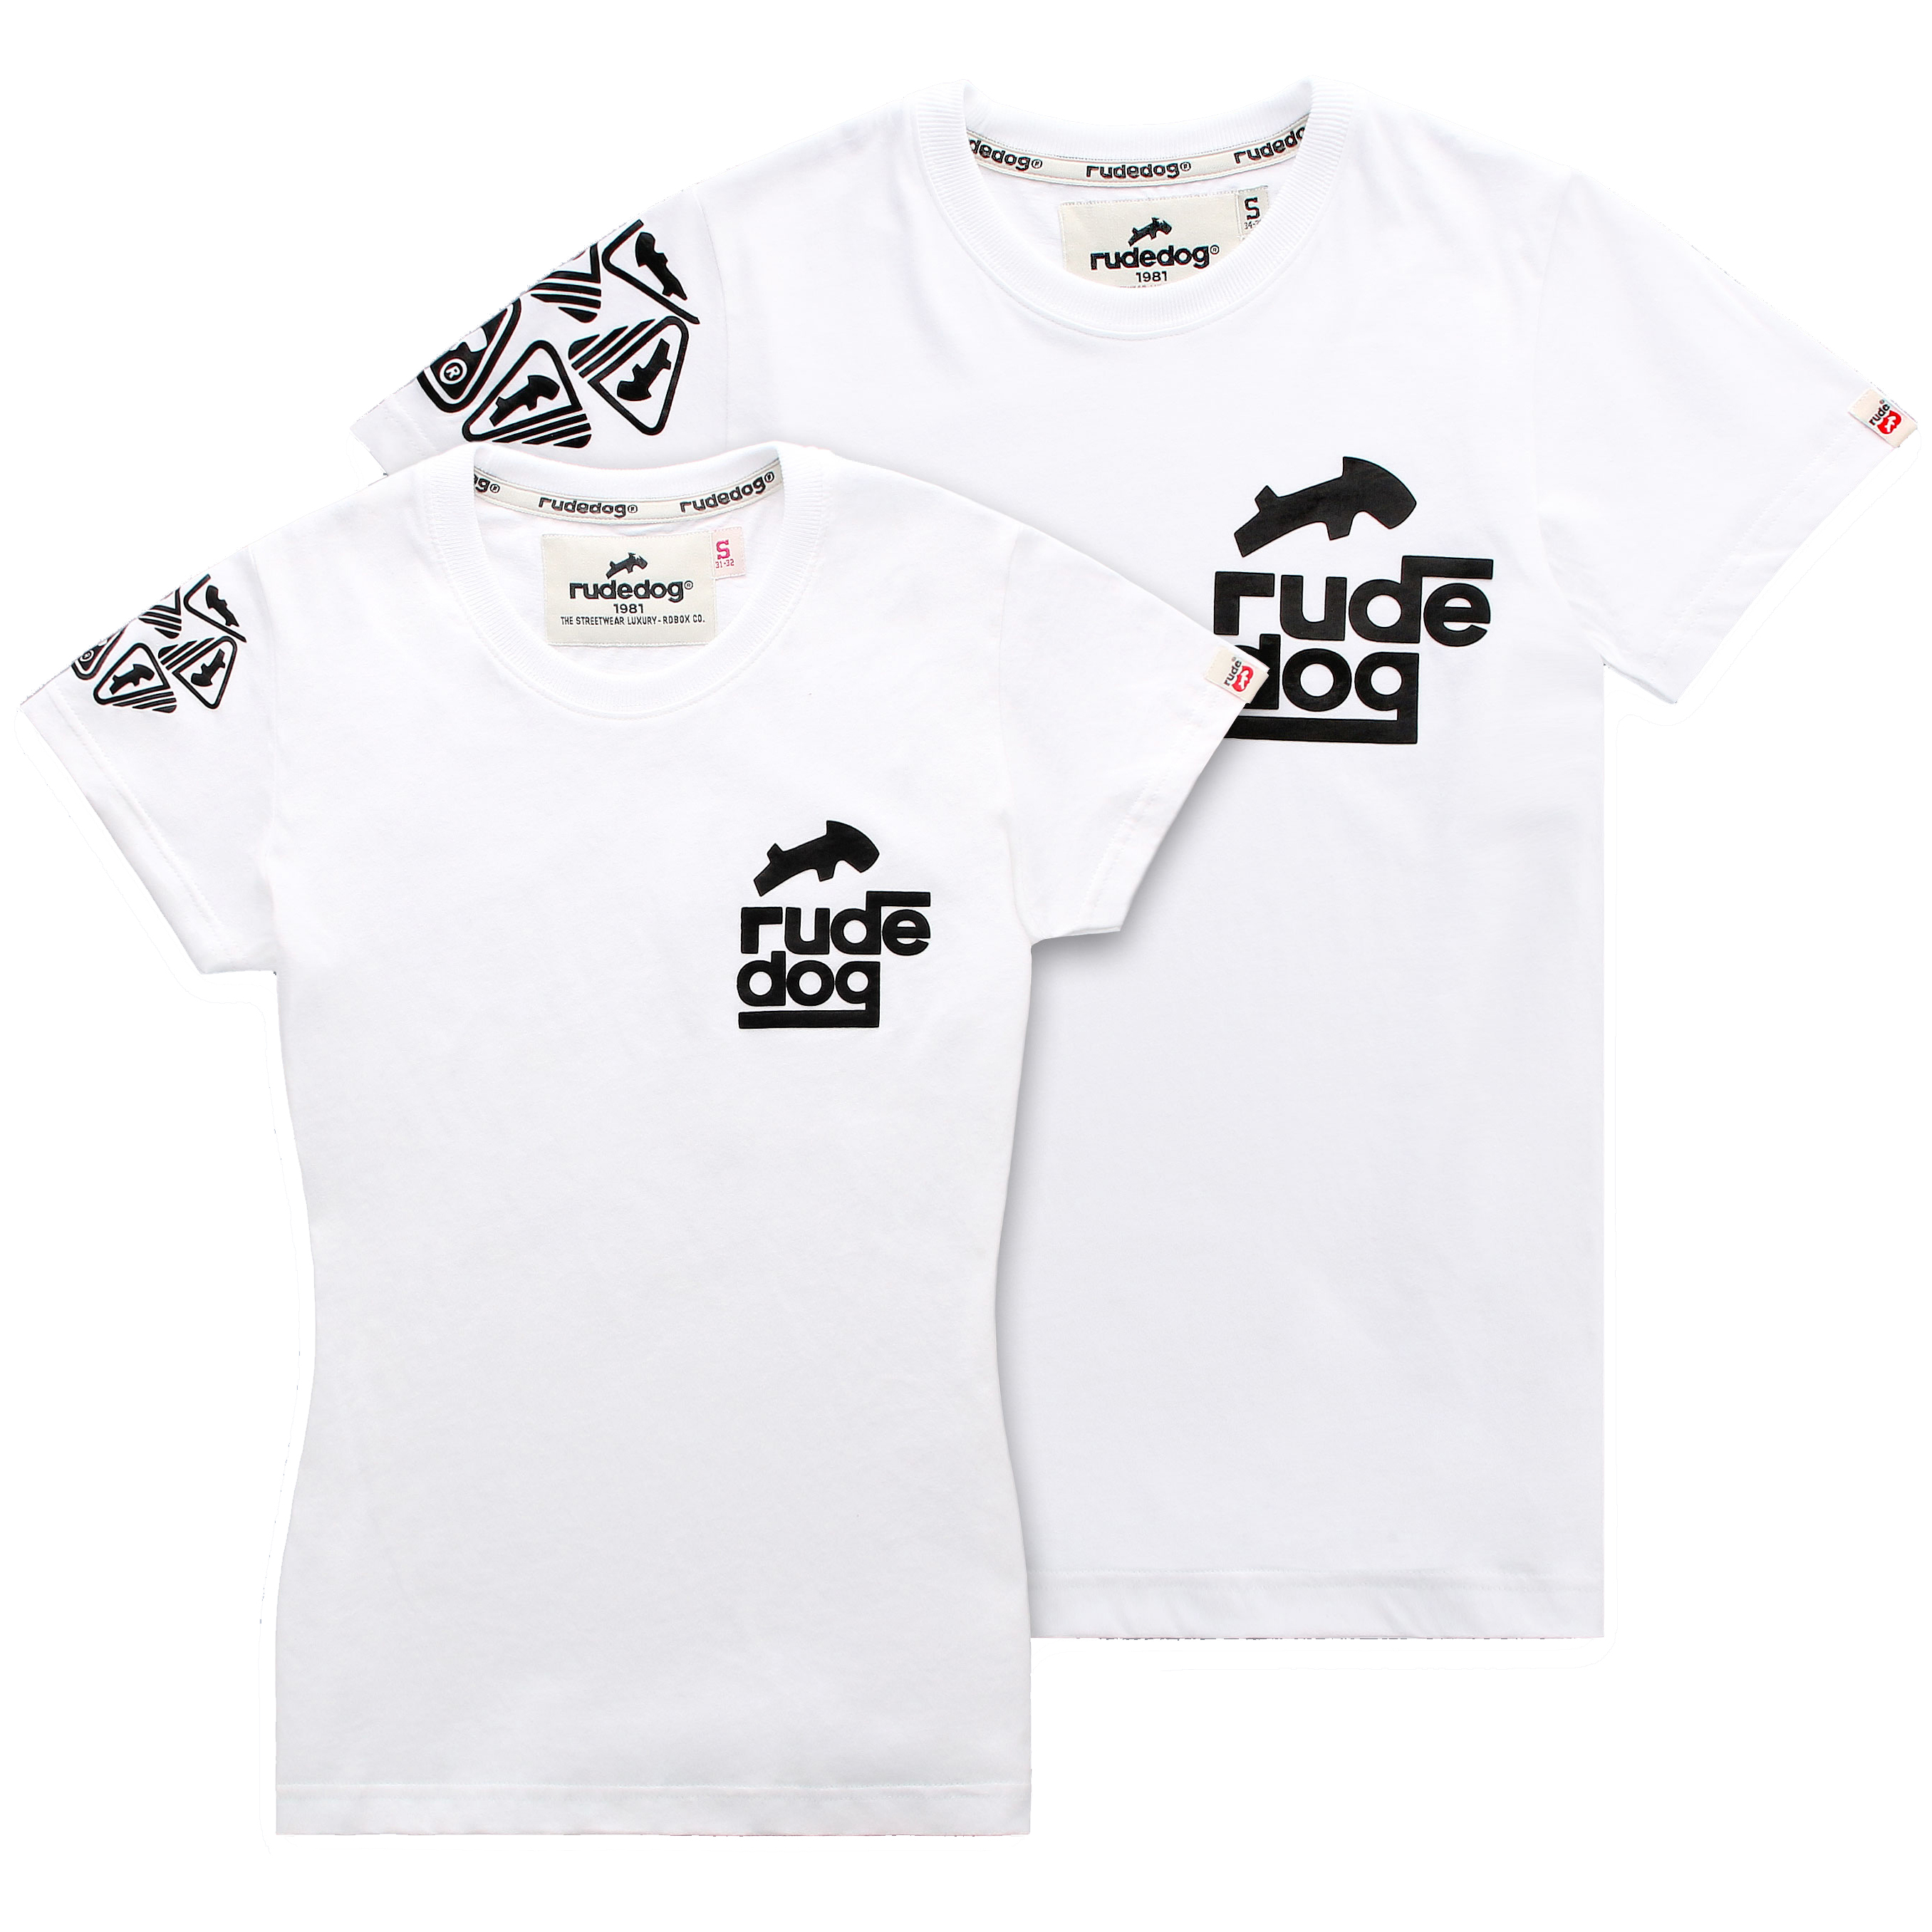 rudedog T-shirt เสื้อยืด รุ่น SquareRude (ผุ้หญิง) แฟชั่น คอกลม ลายสกรีน ผ้าฝ้าย cotton ฟอกนุ่ม ไซส์ S M L XL